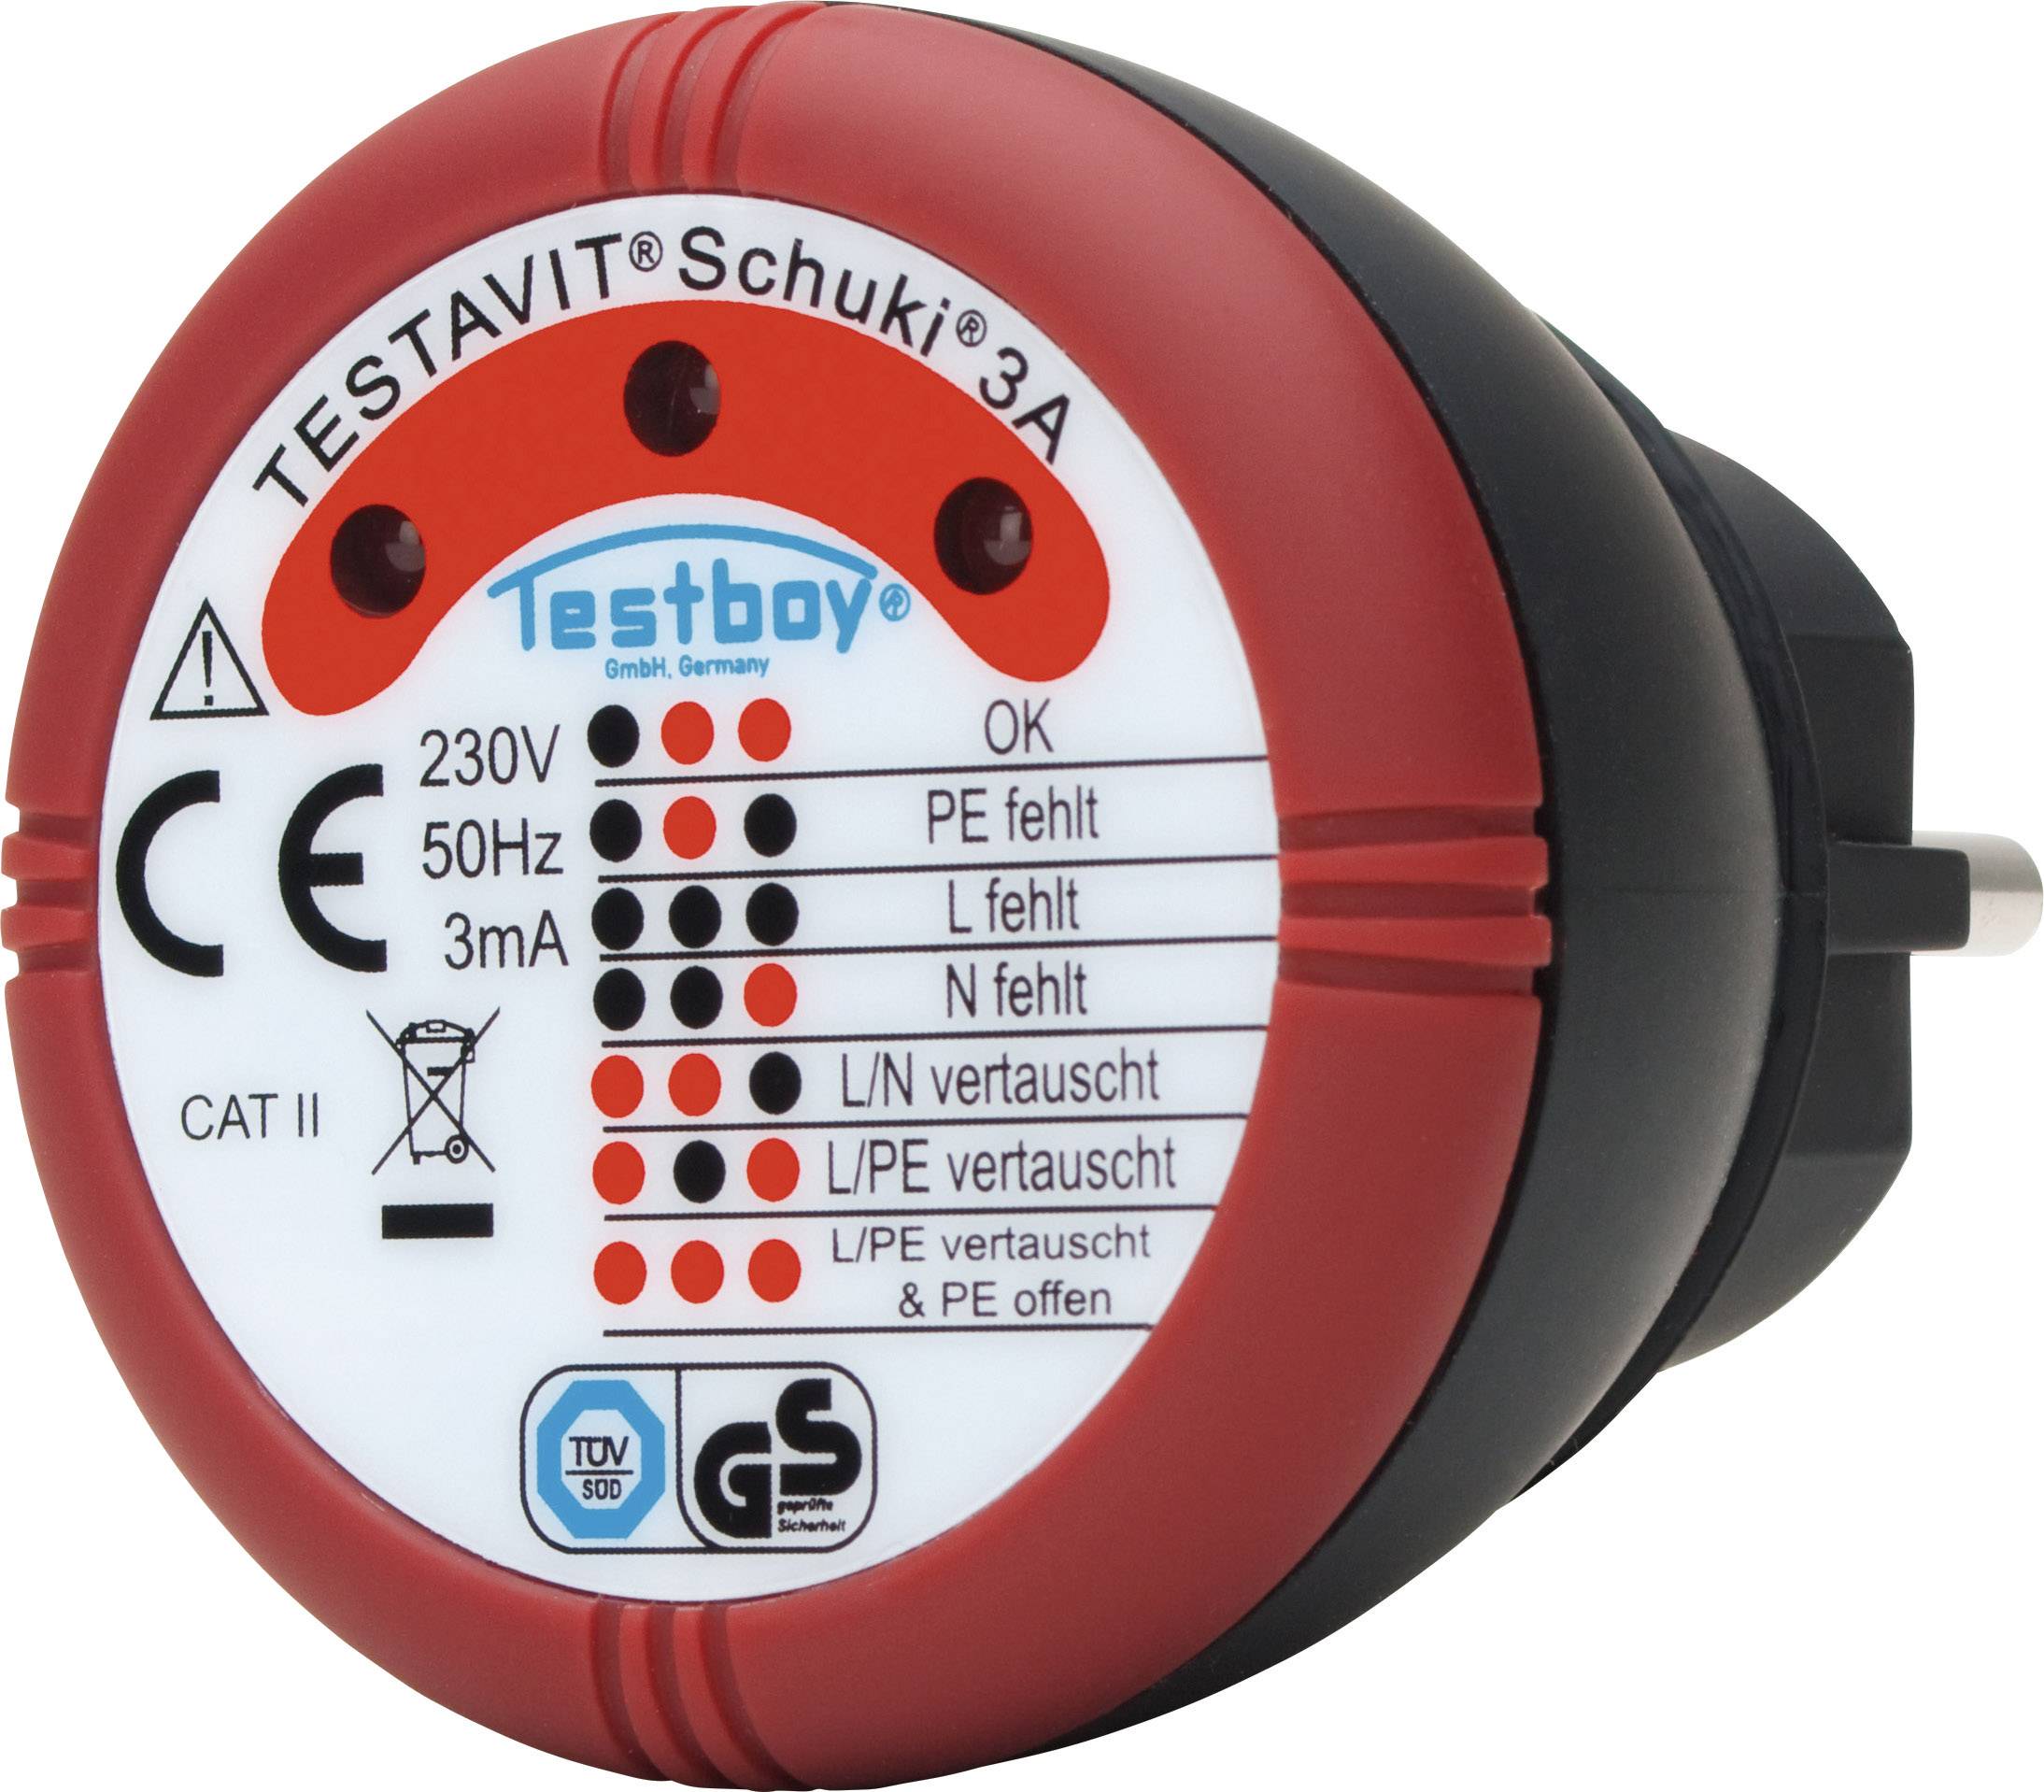 Image of Testavit Schuki 1A socket outlet tester